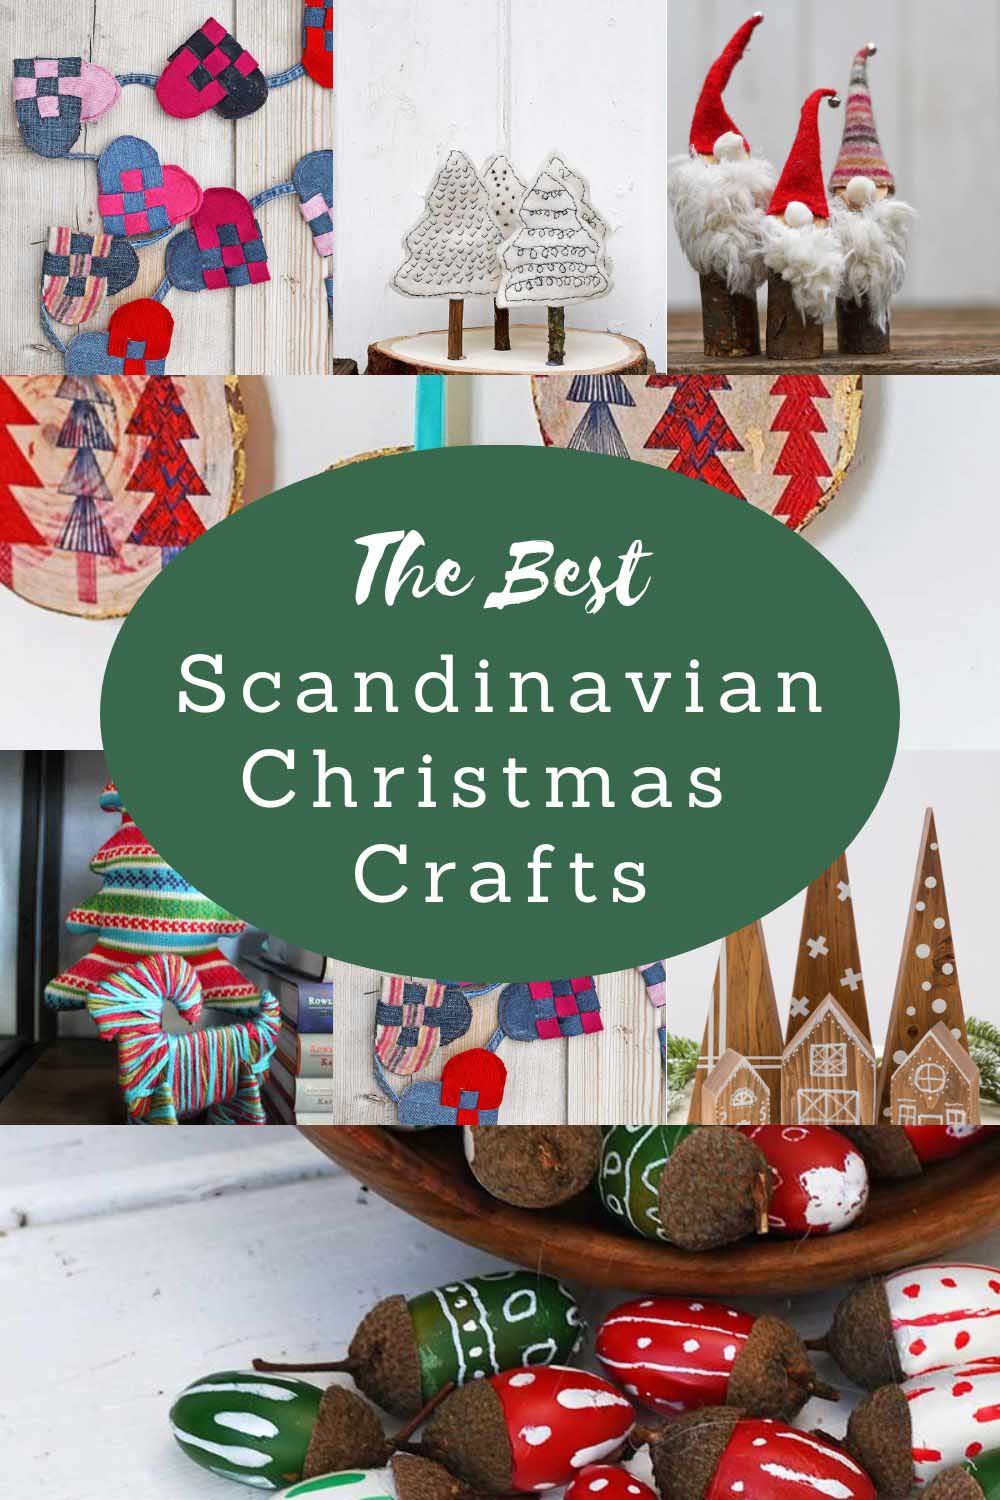 The best scandinavian Christmas crafts